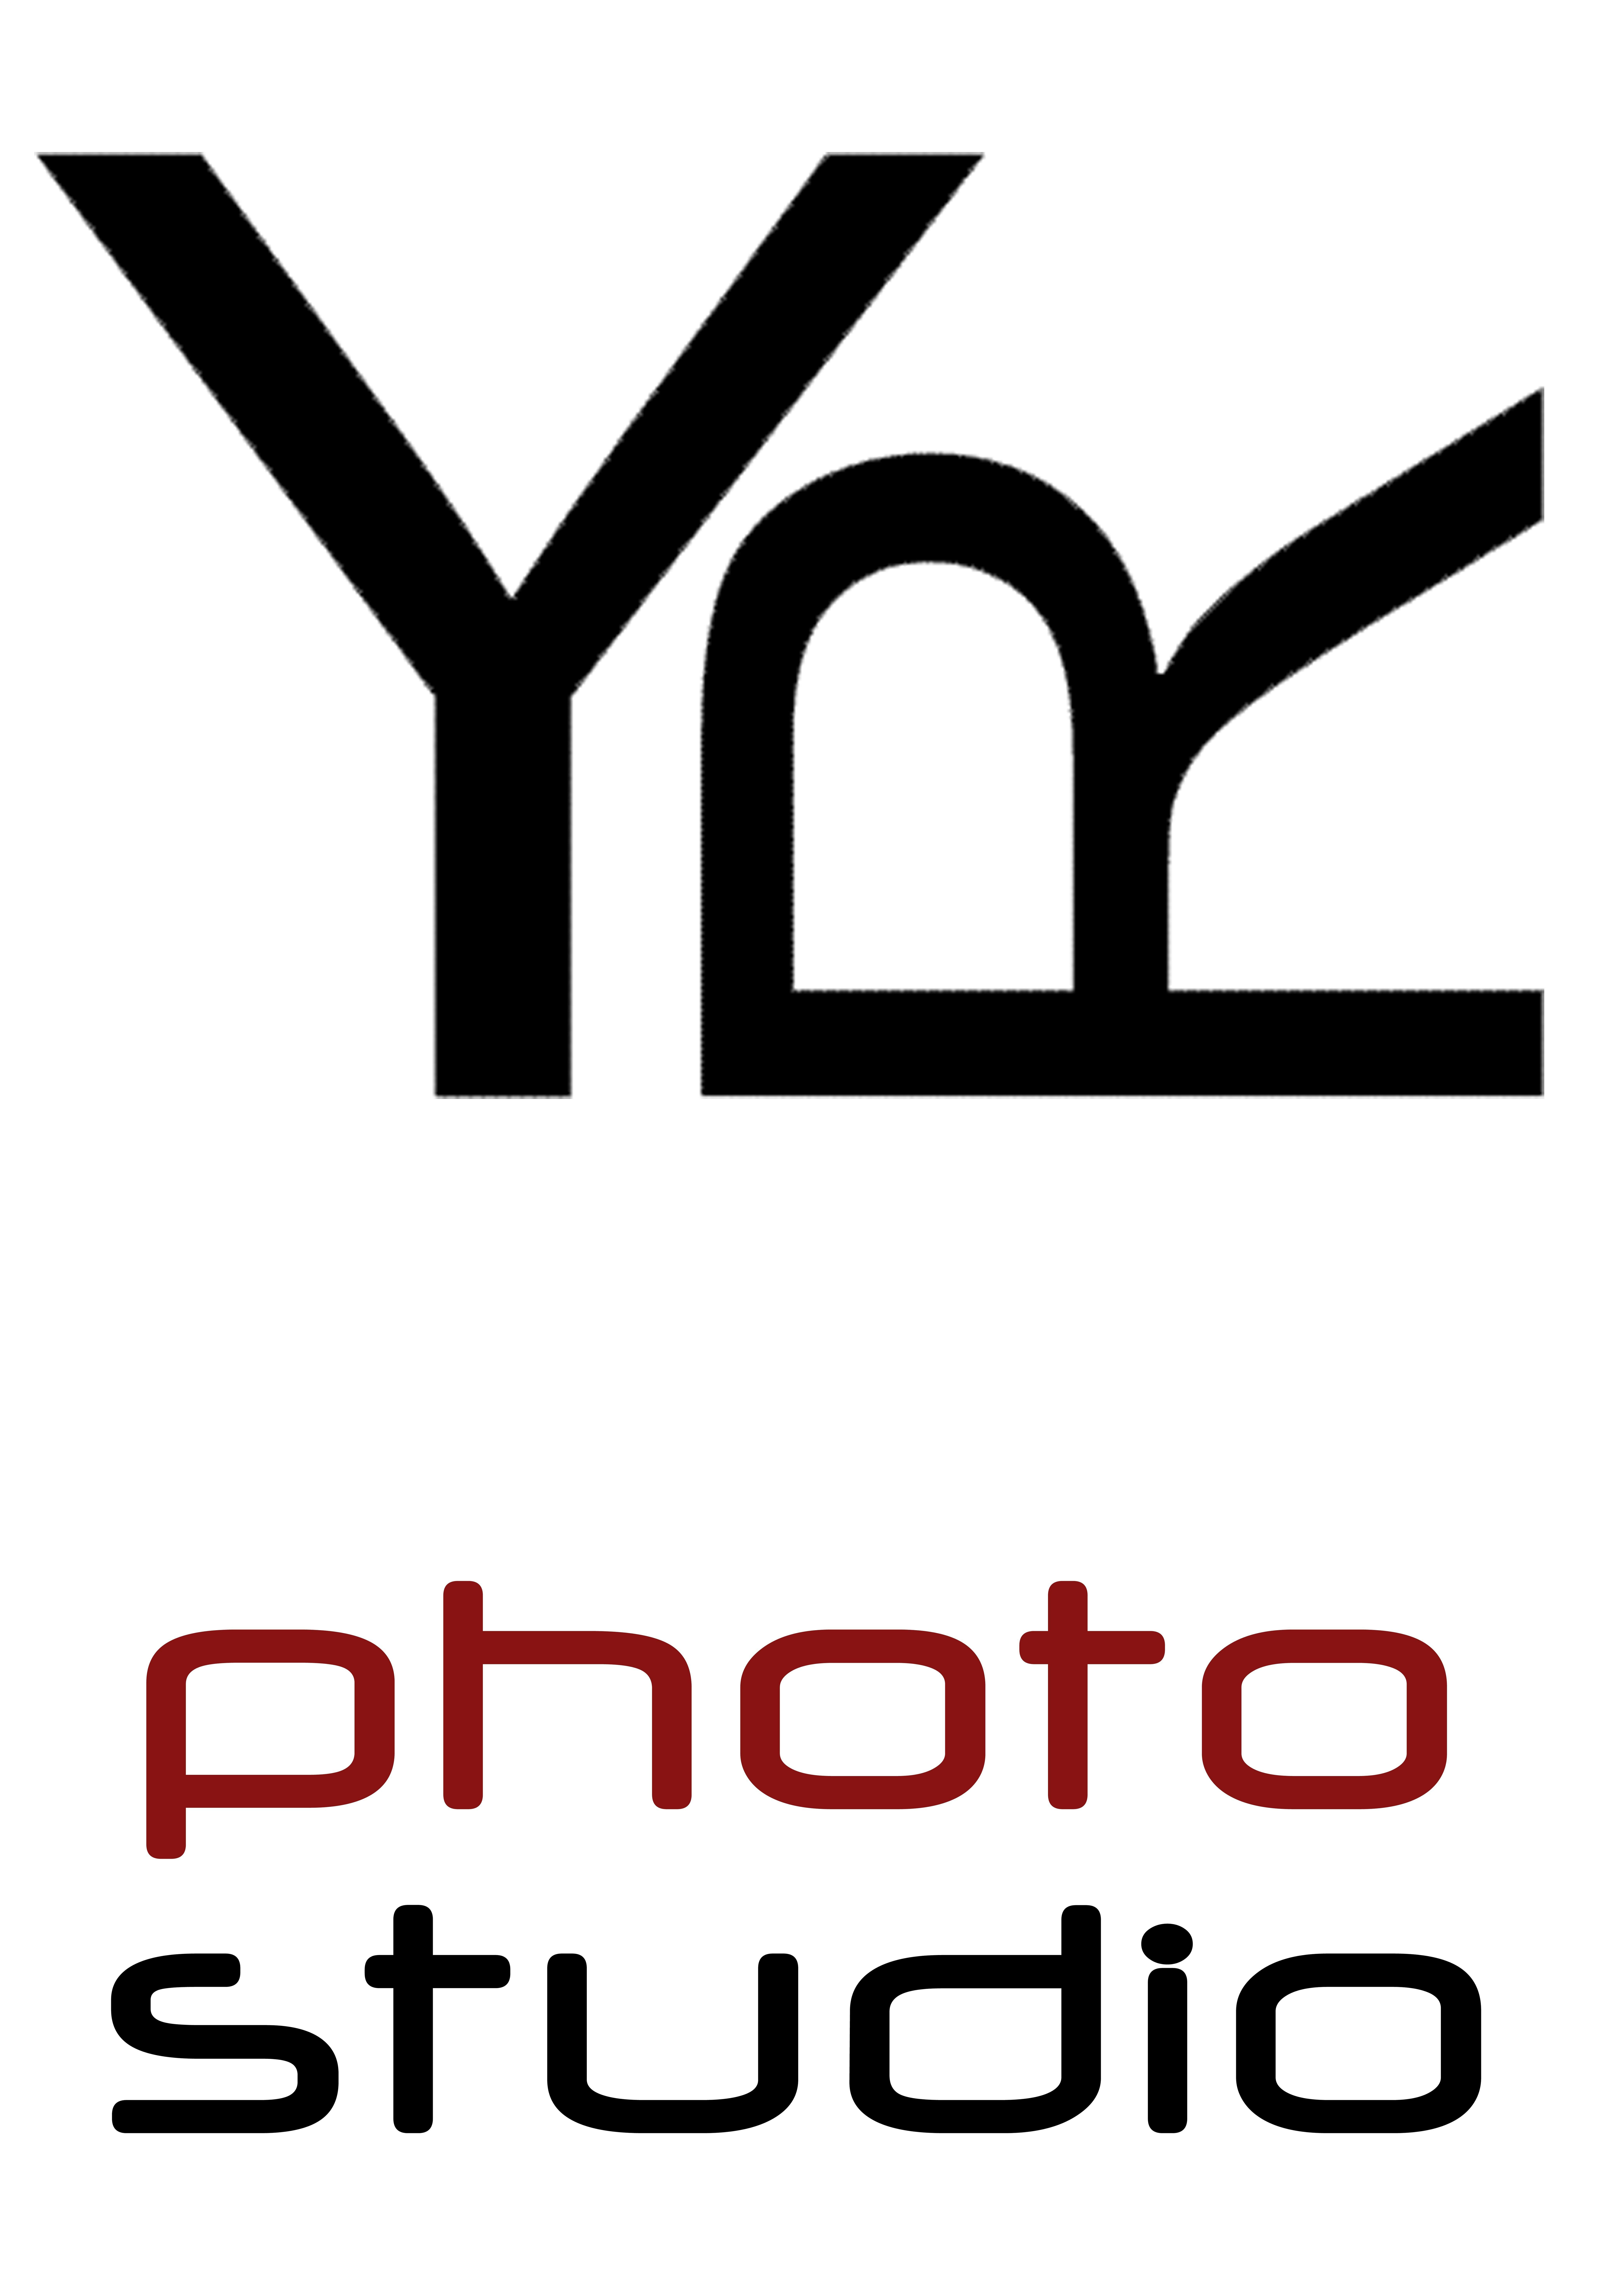 Rusev Logo - Yonko Rusev | НАПСФВ